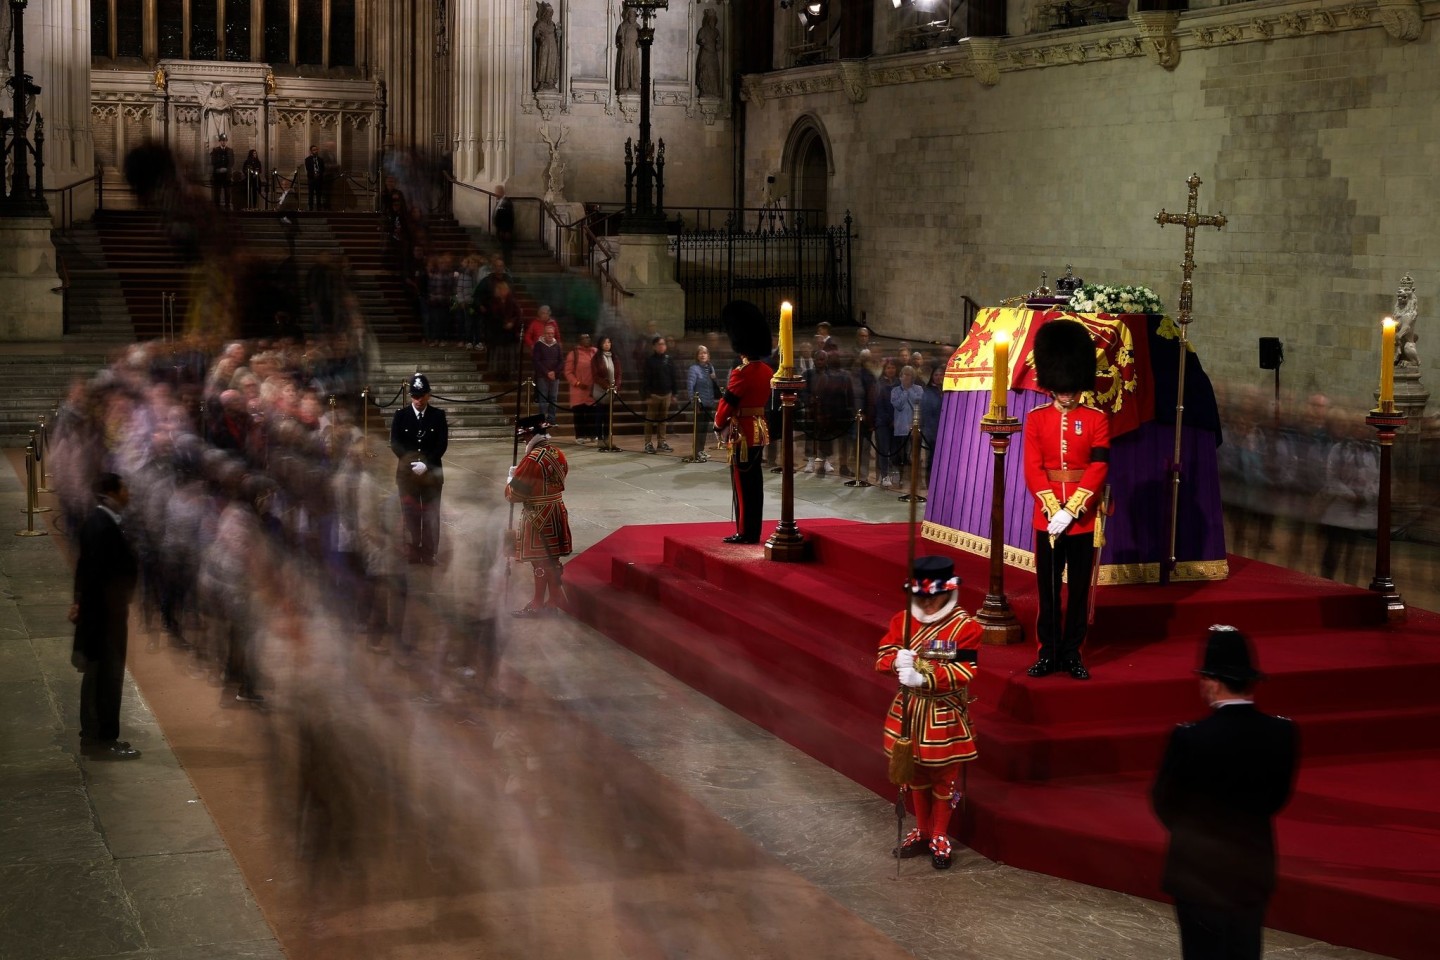 Menschen gehen am Sarg von Königin Elizabeth II. vorbei, der auf dem Katafalk in der Westminster Hall im Londoner Palace of Westminster aufgebahrt ist.